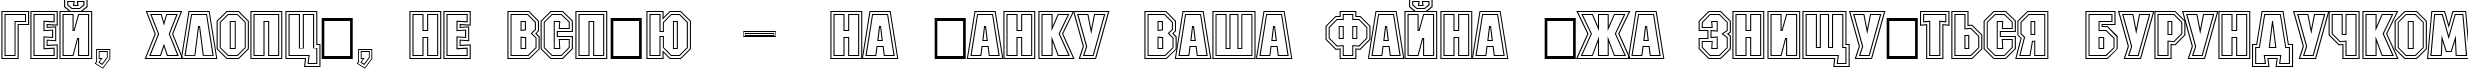 Пример написания шрифтом a_MachinaNova2Otl Bold текста на украинском